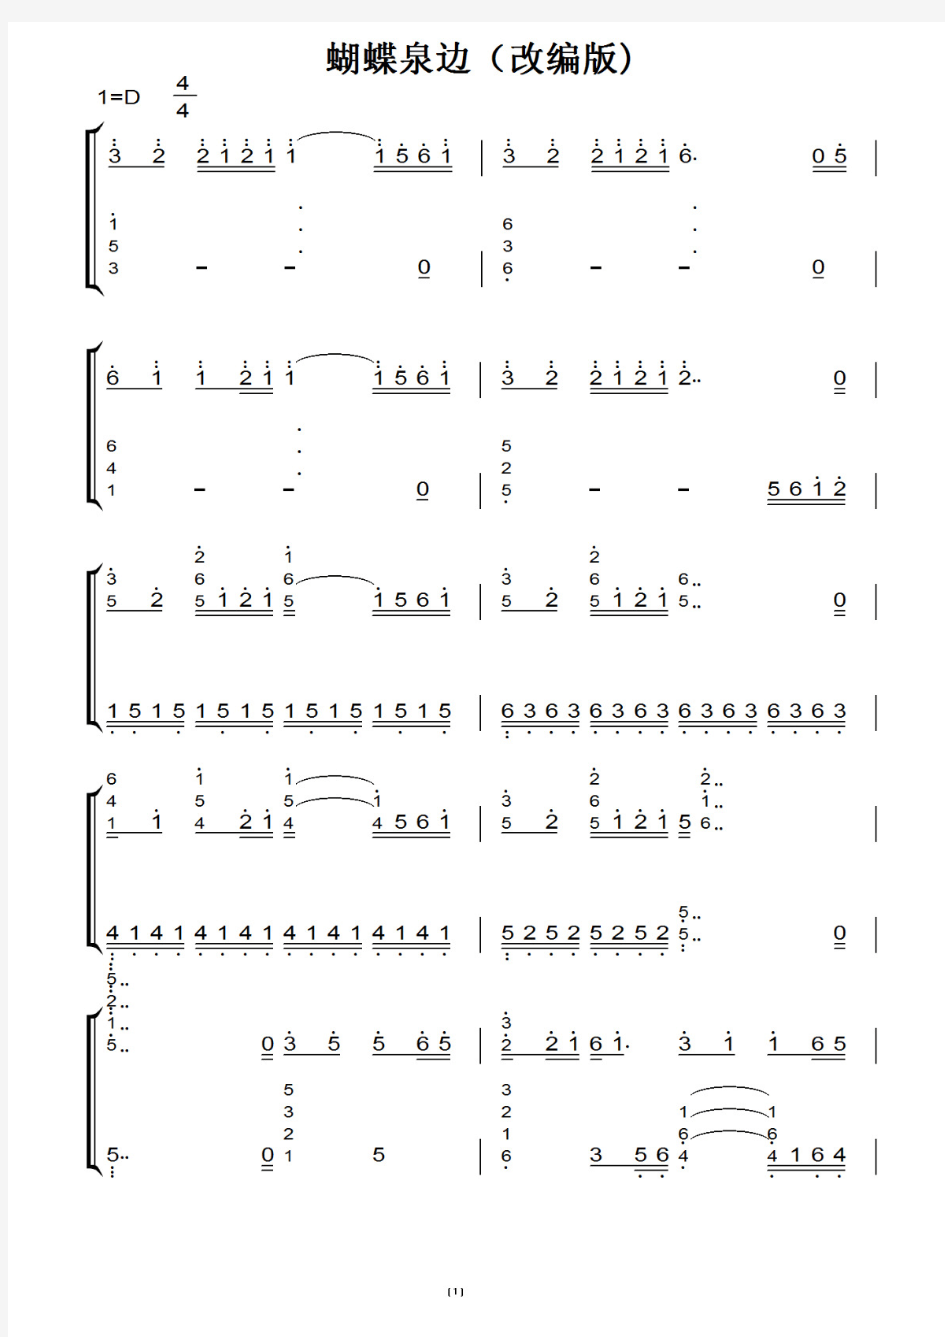 蝴蝶泉边(改编版) 钢琴谱 钢琴双手简谱 钢琴简谱.pdf